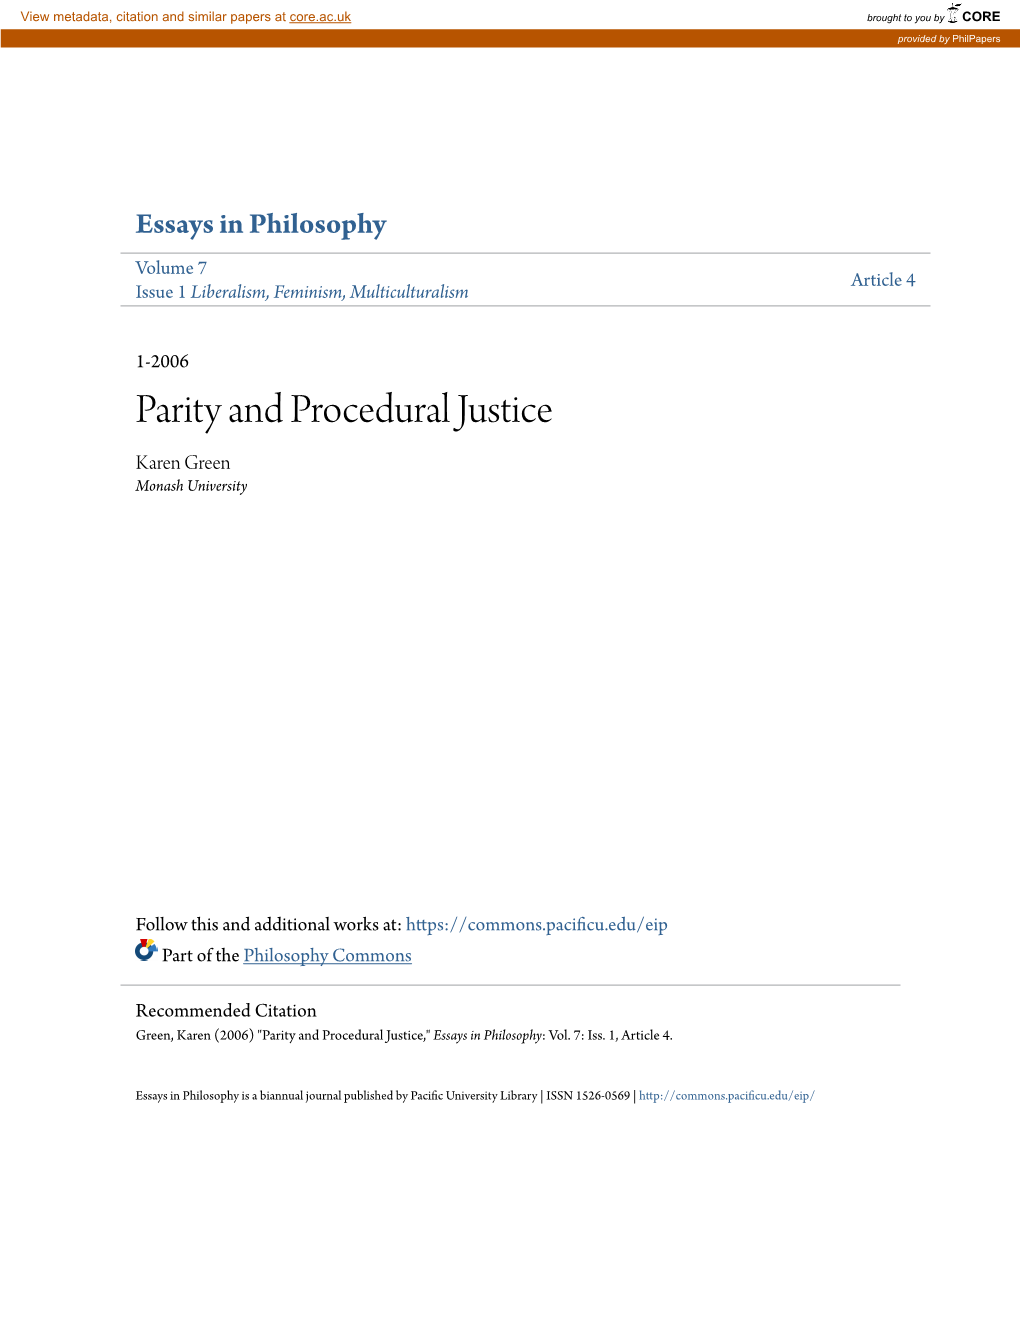 Parity and Procedural Justice Karen Green Monash University